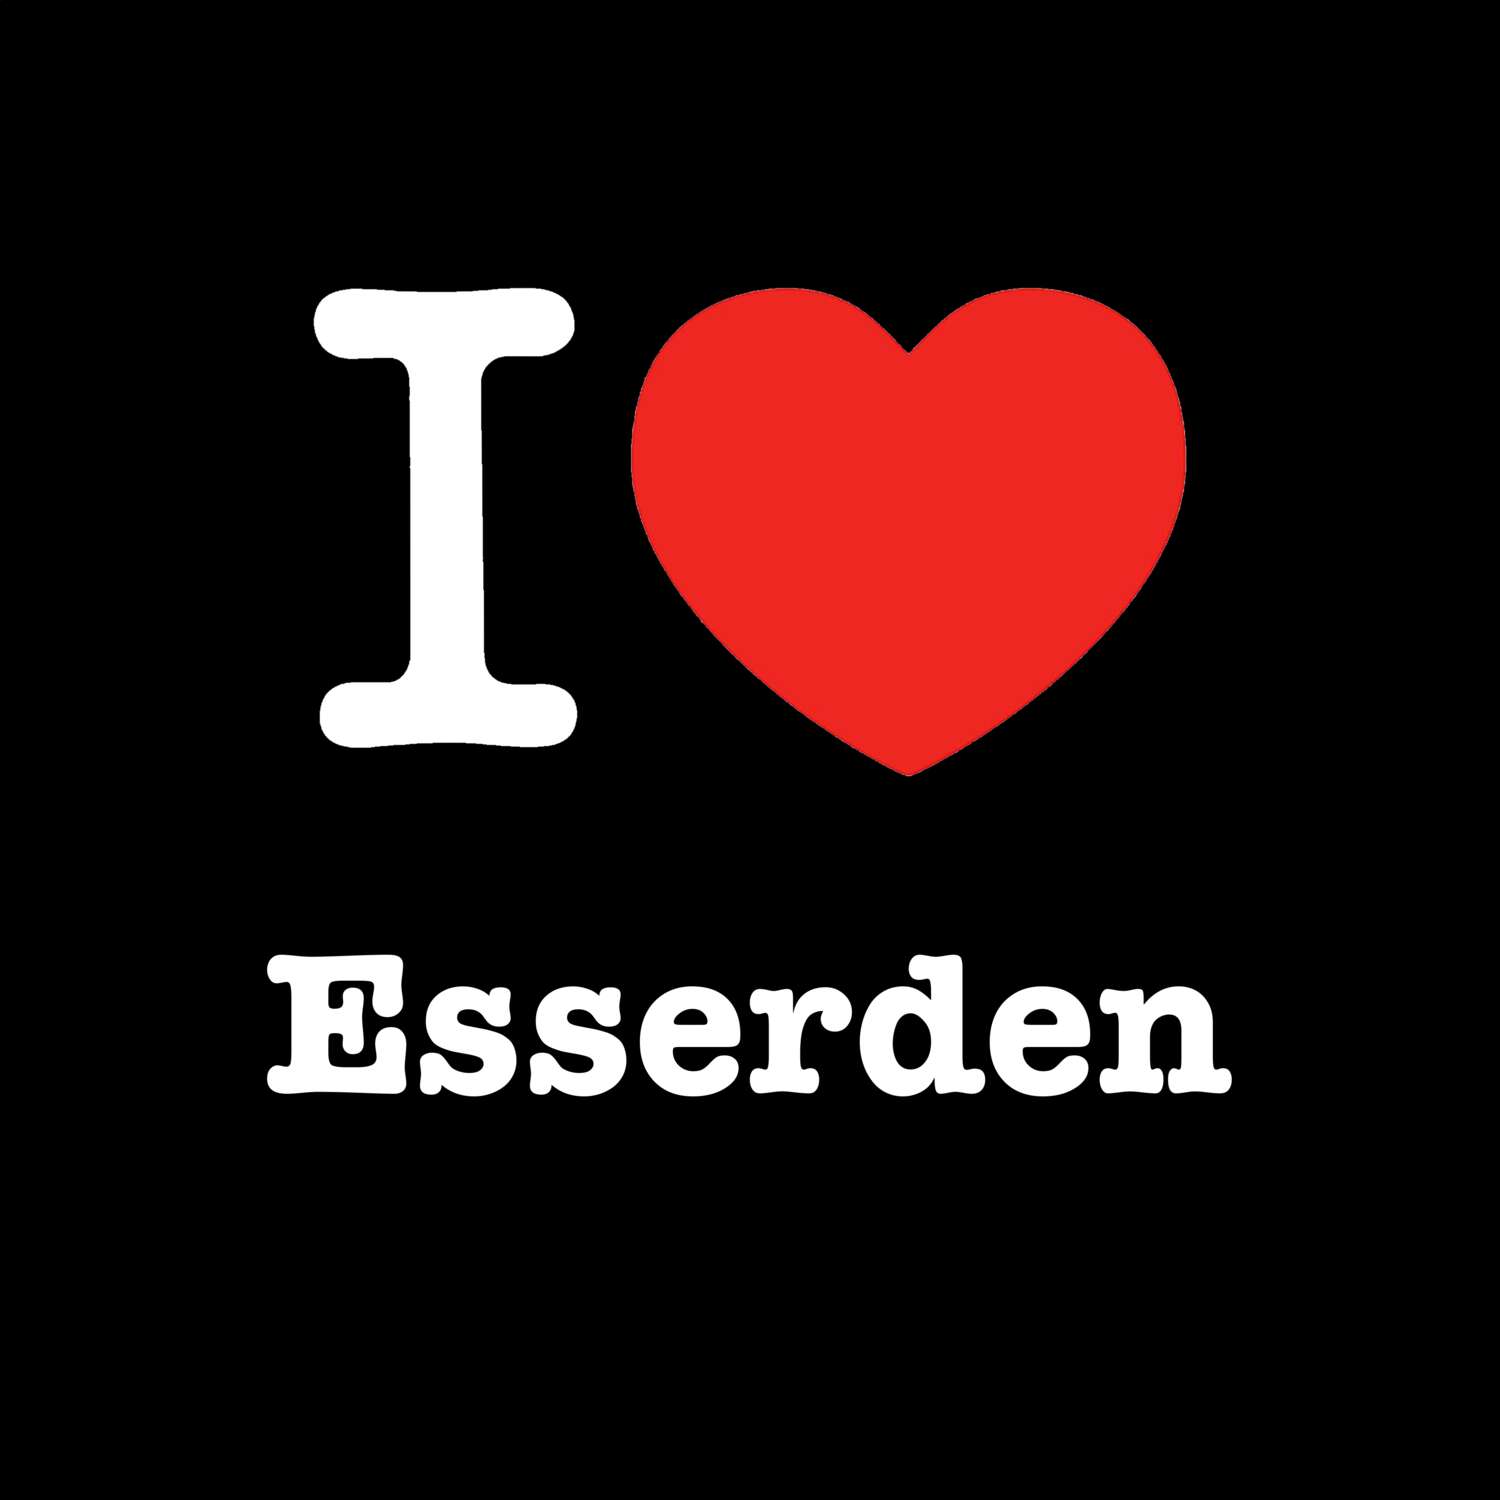 Esserden T-Shirt »I love«